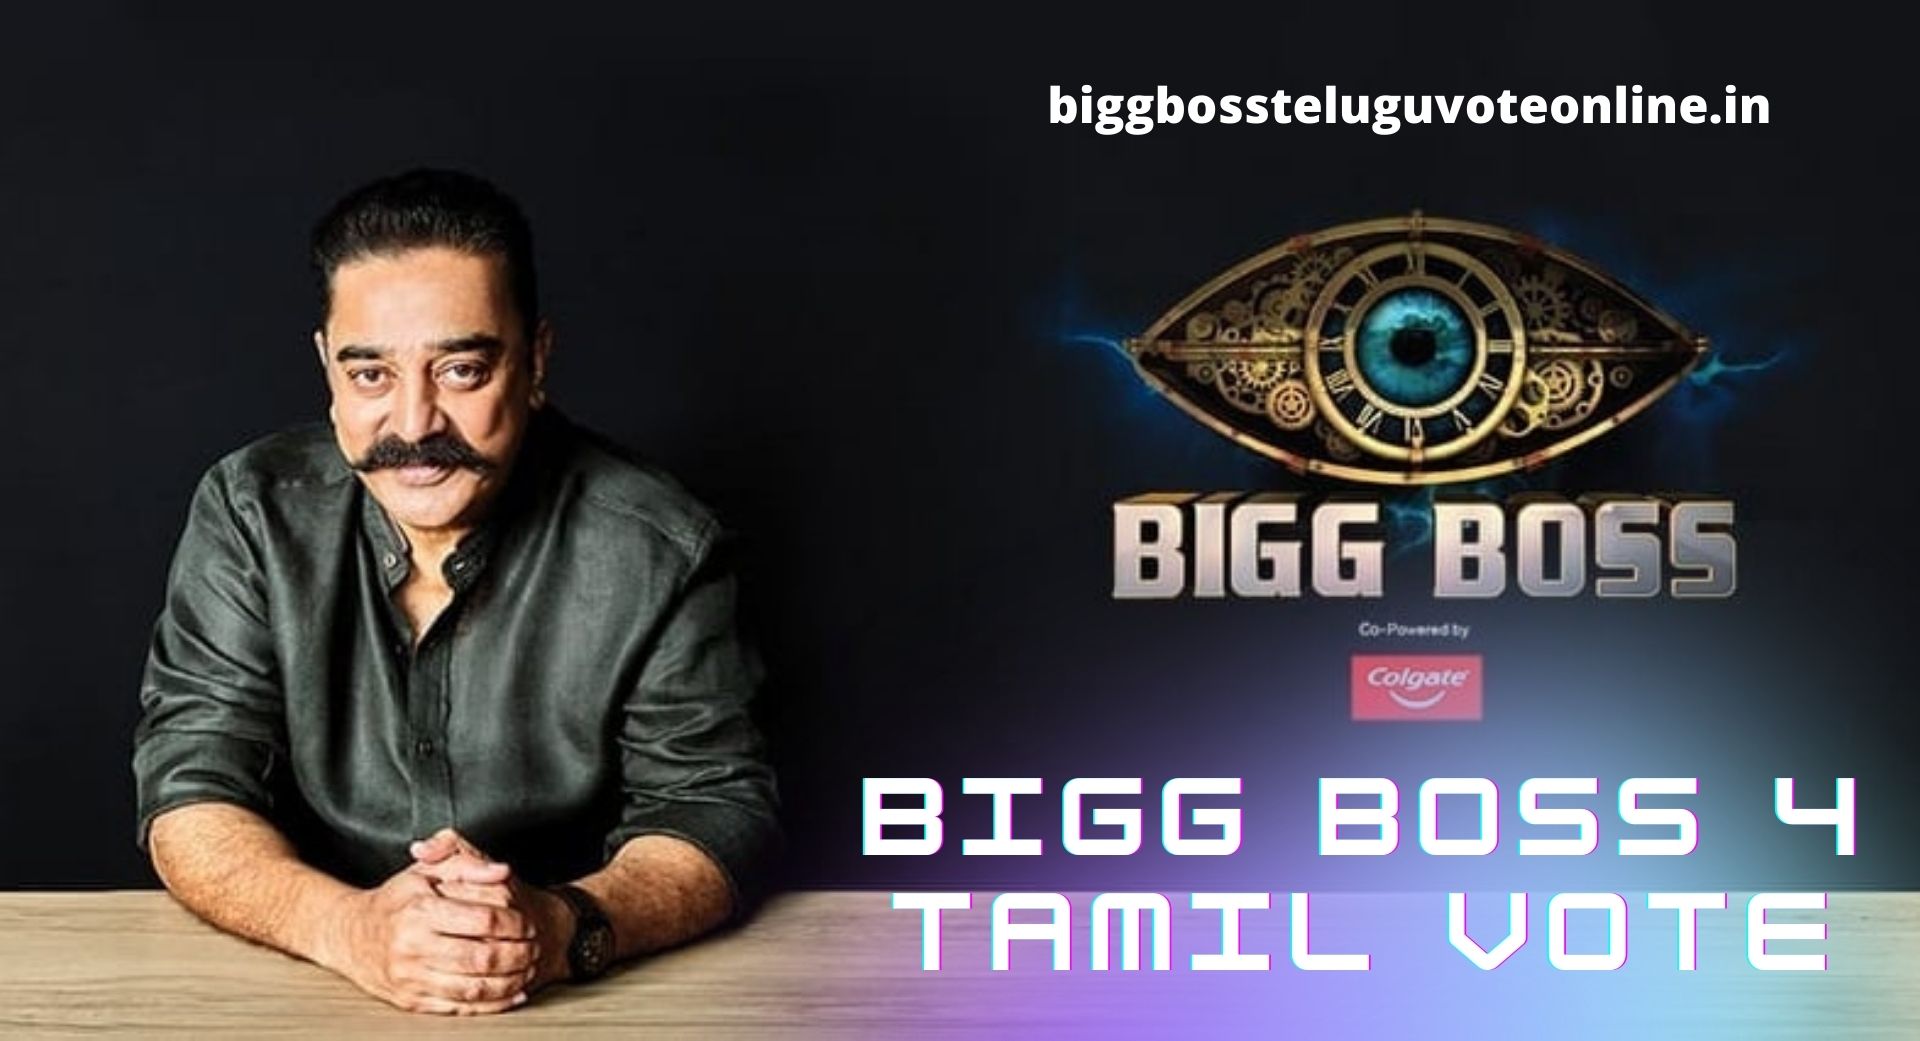 bigg boss 3 tamil live hotstar today